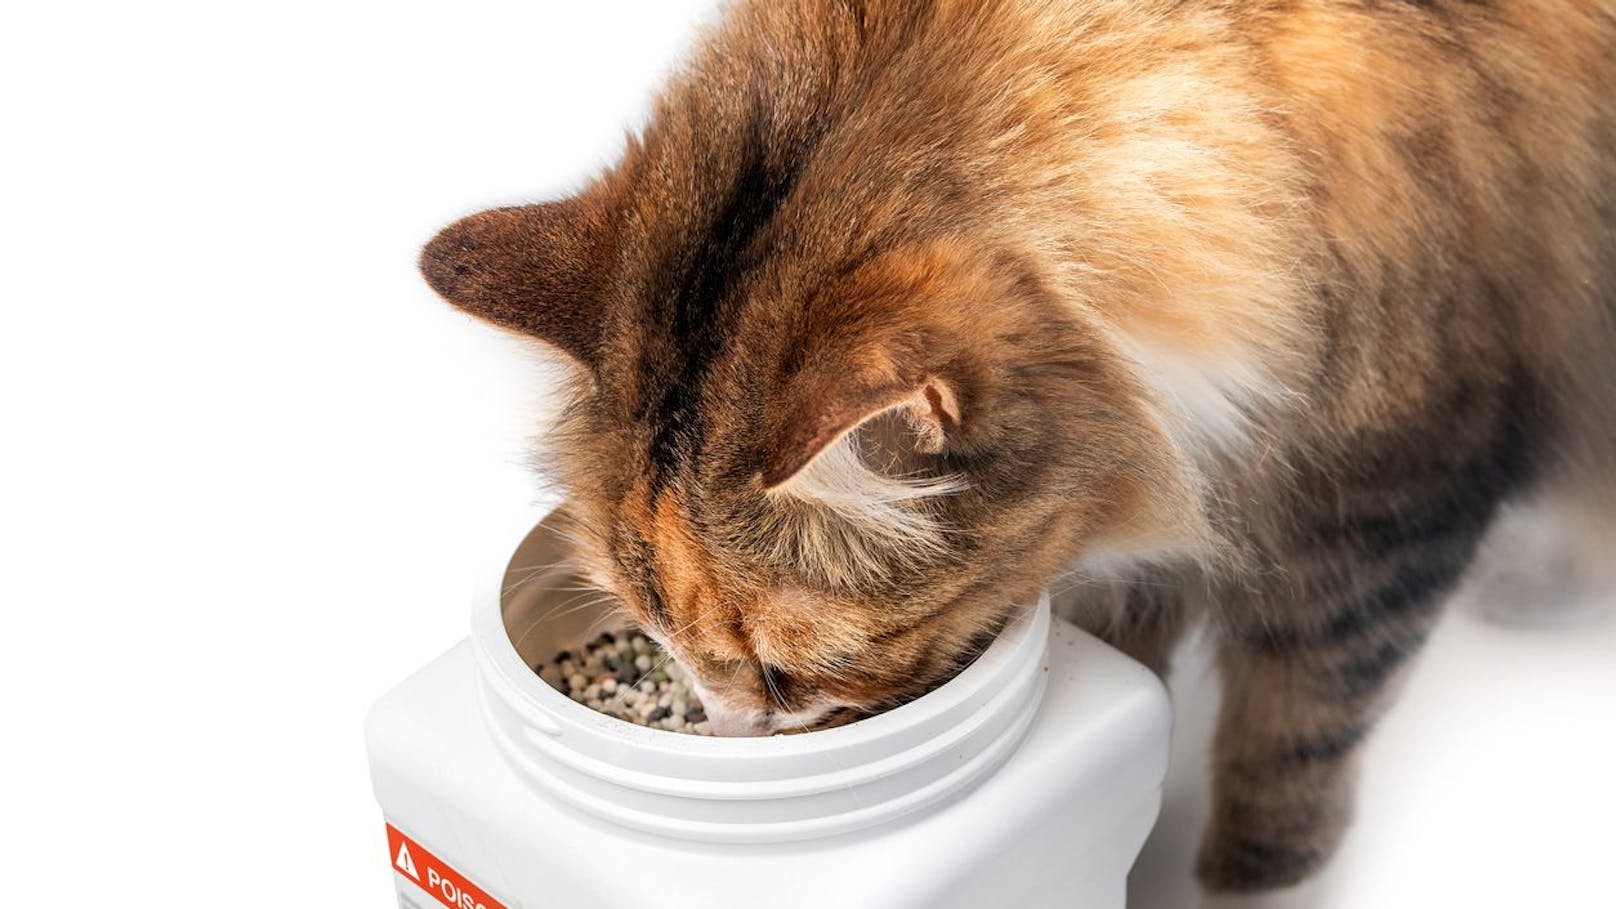 Katze vergiftet! Tierheim warnt vor neuartigem Gift